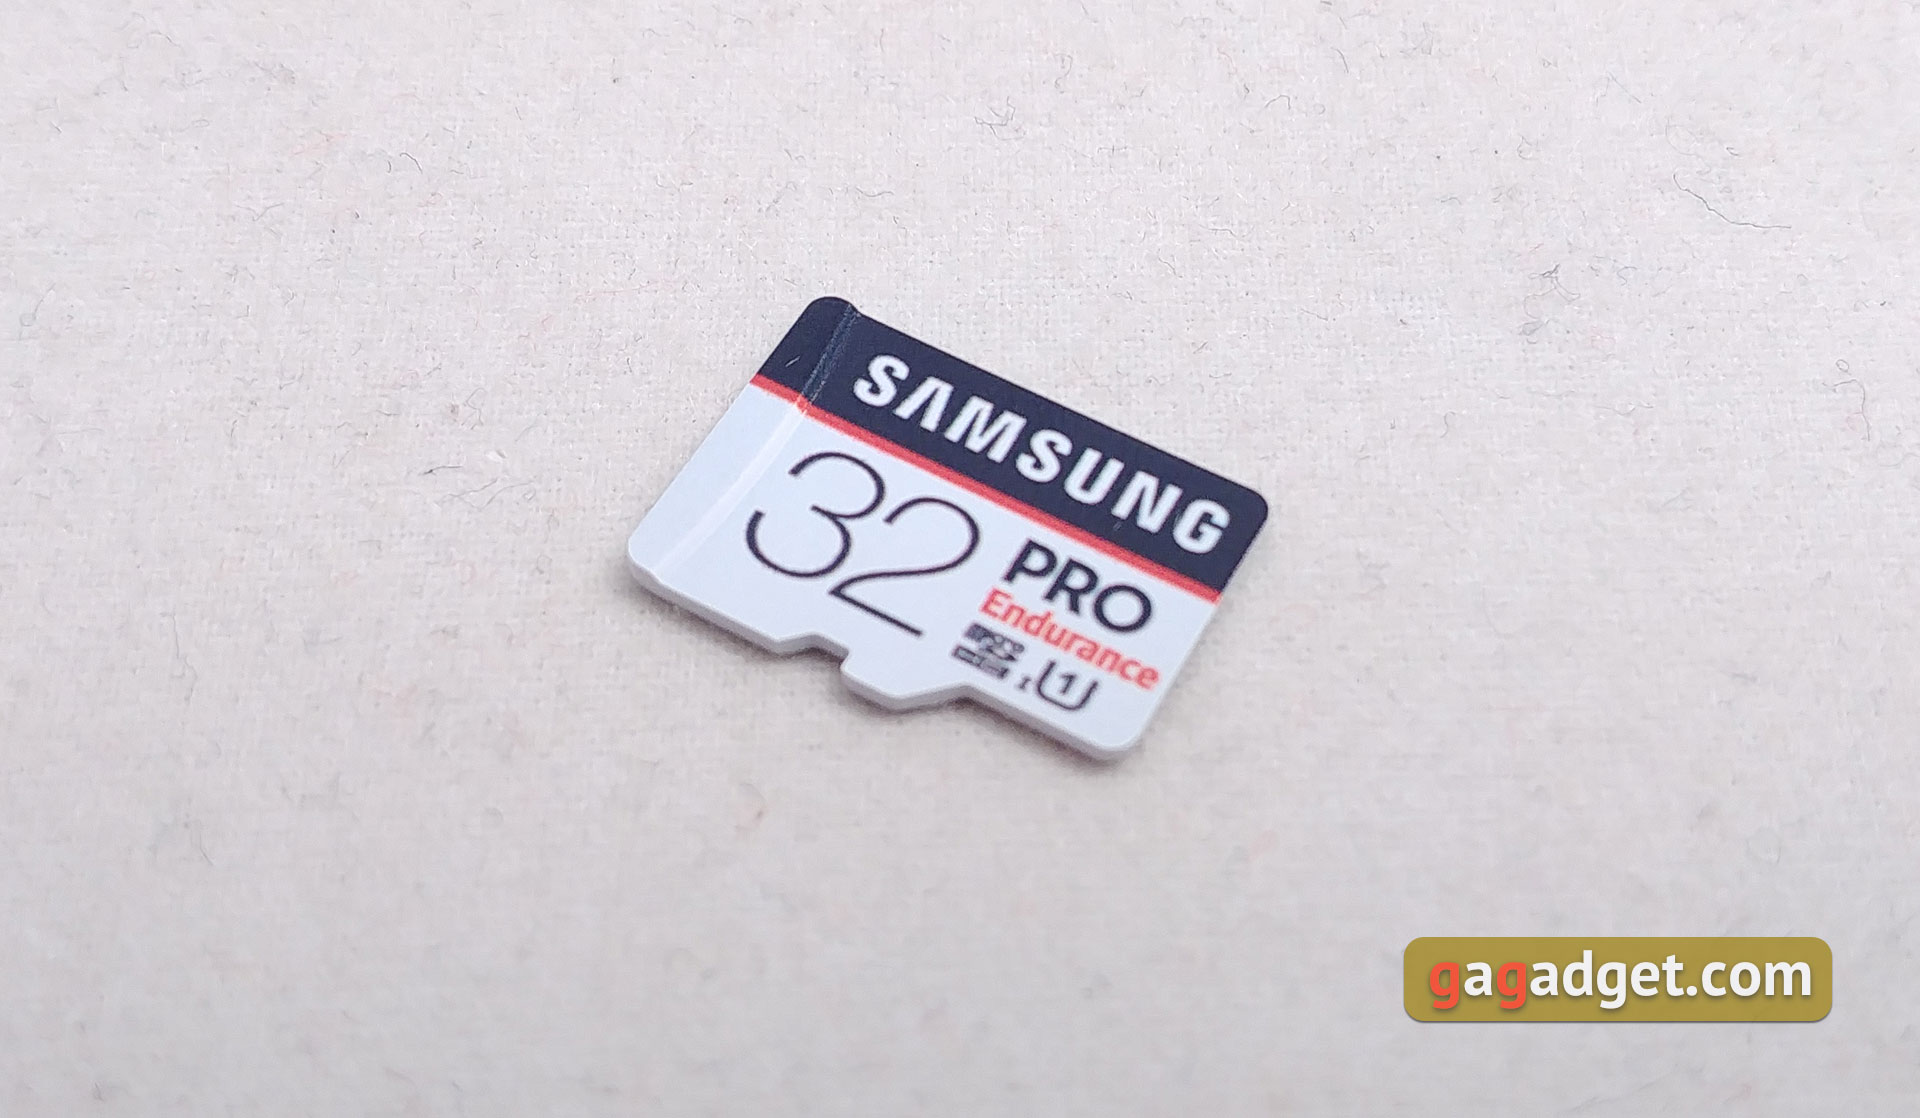 Обзор выносливых MicroSD Samsung PRO Endurance Card и USB-флешки Bar Plus-7